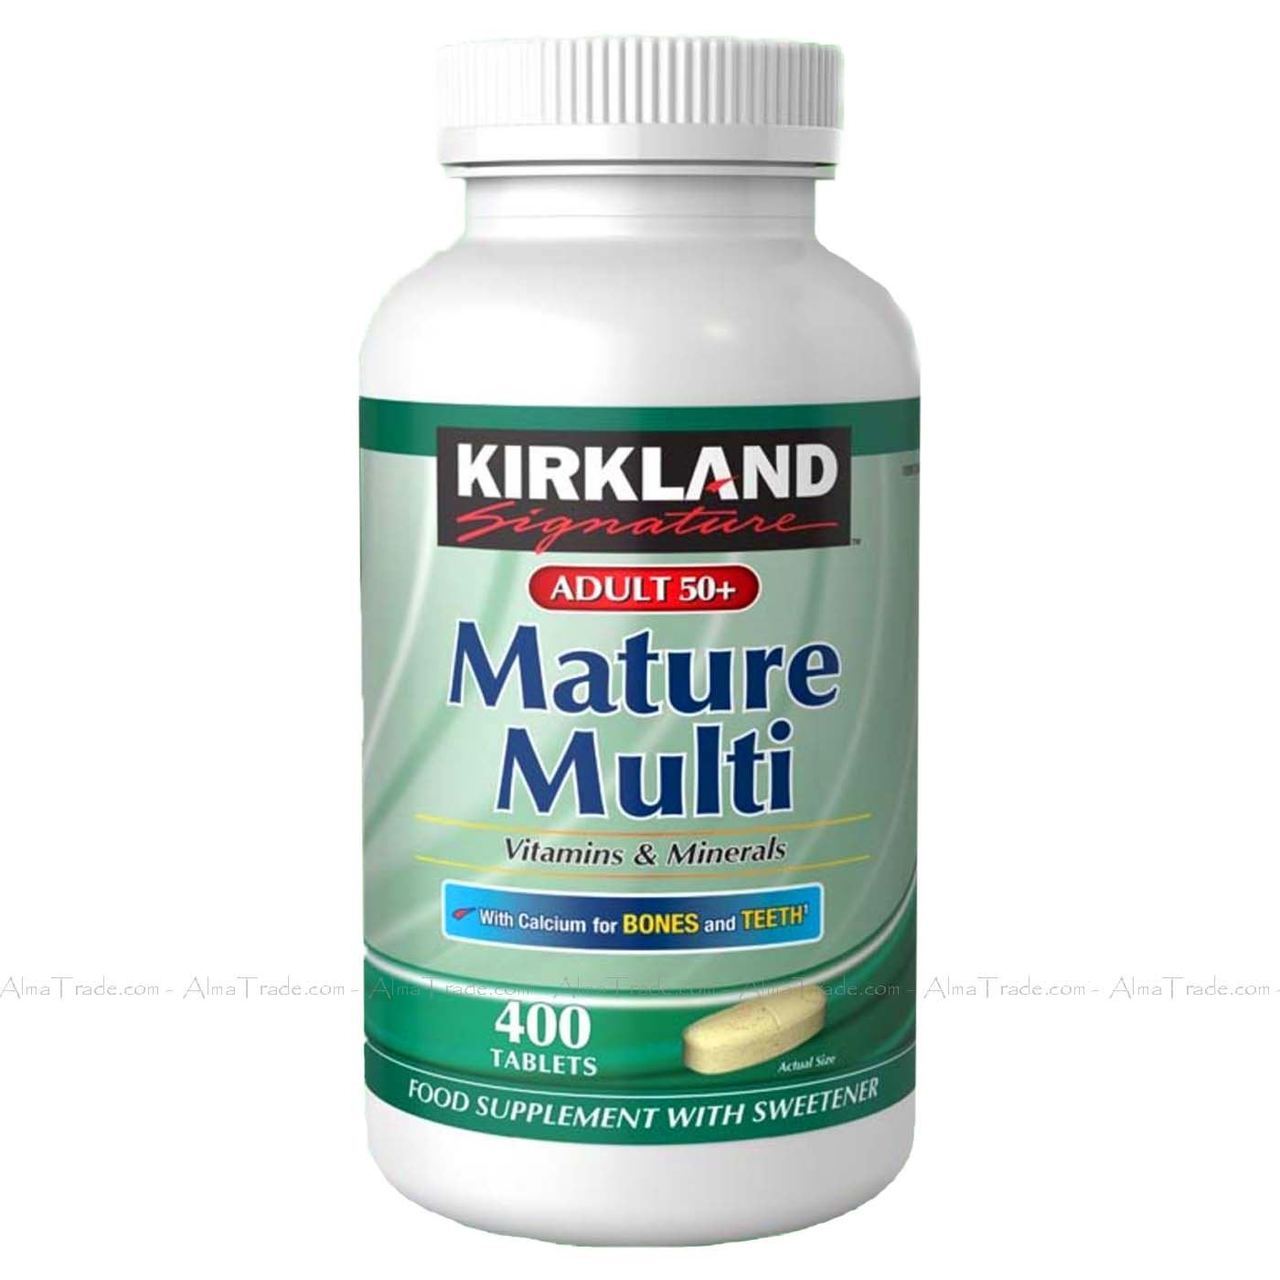 Kirkland mature multi vitamins